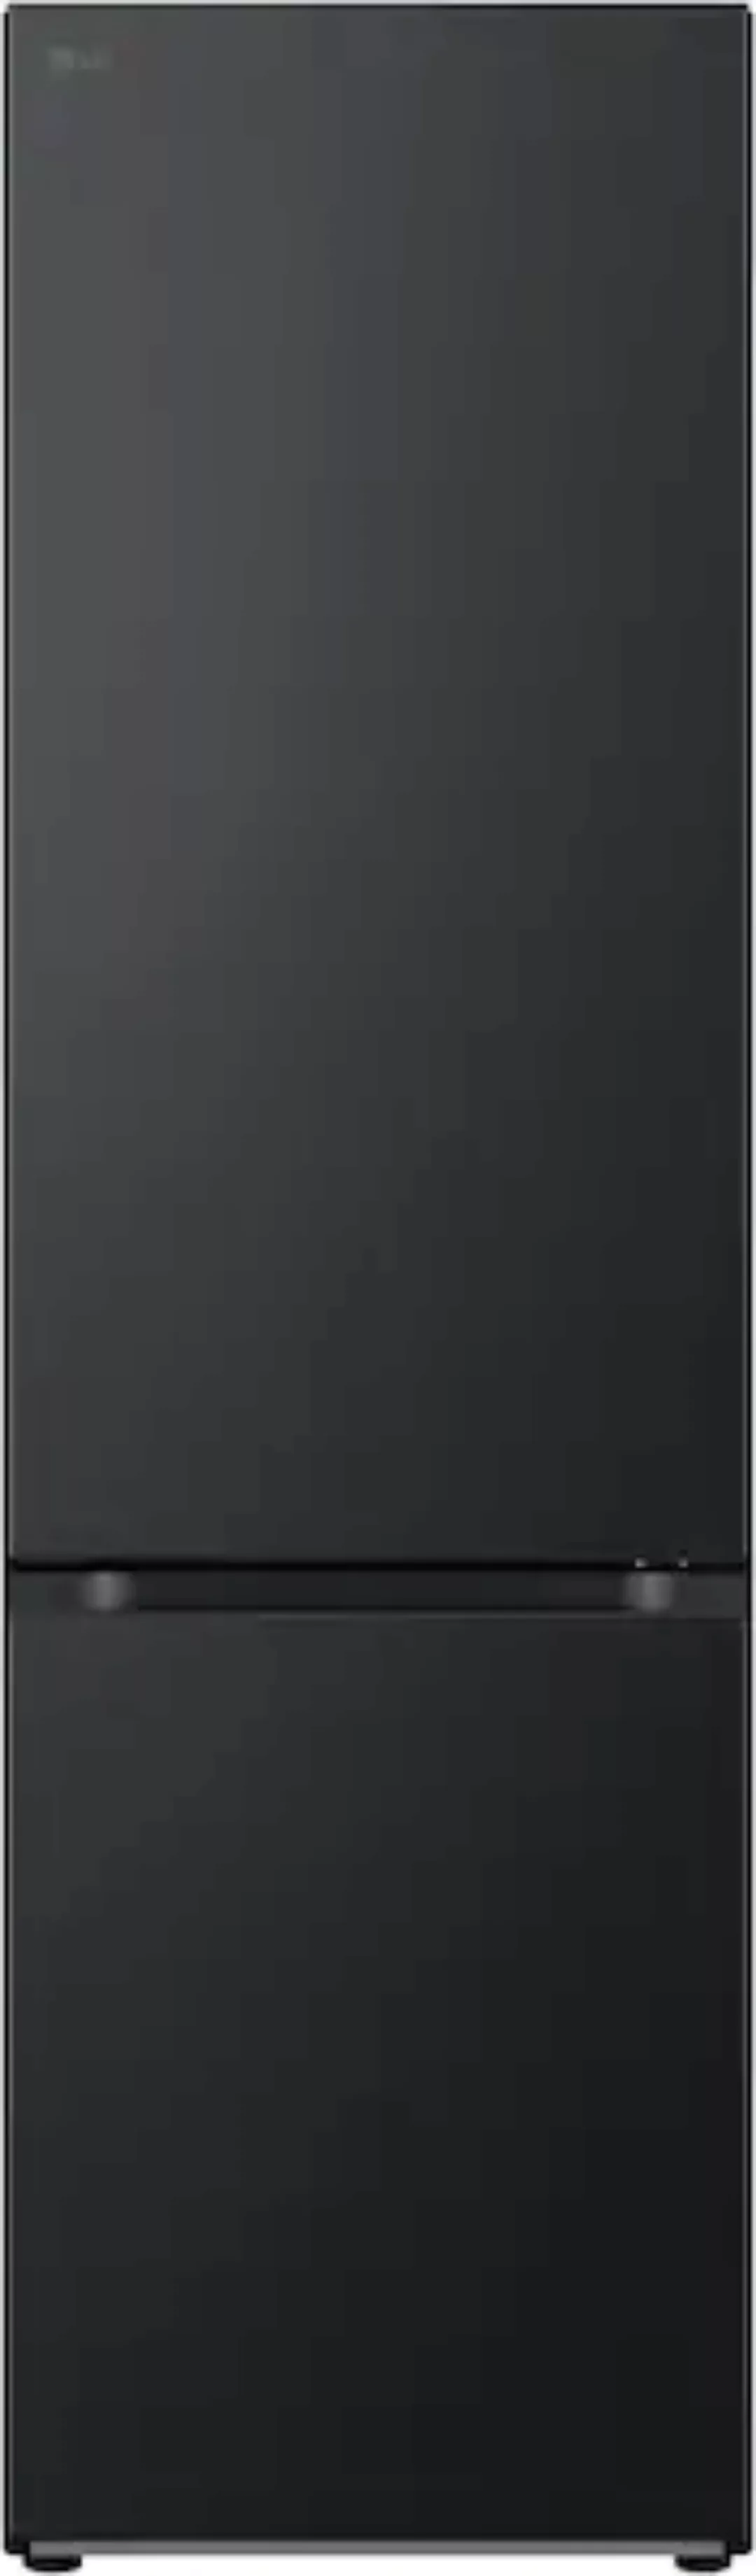 LG Kühl-/Gefrierkombination »GBV7280BEV«, GBV7280BEV, 203 cm hoch, 59,5 cm günstig online kaufen